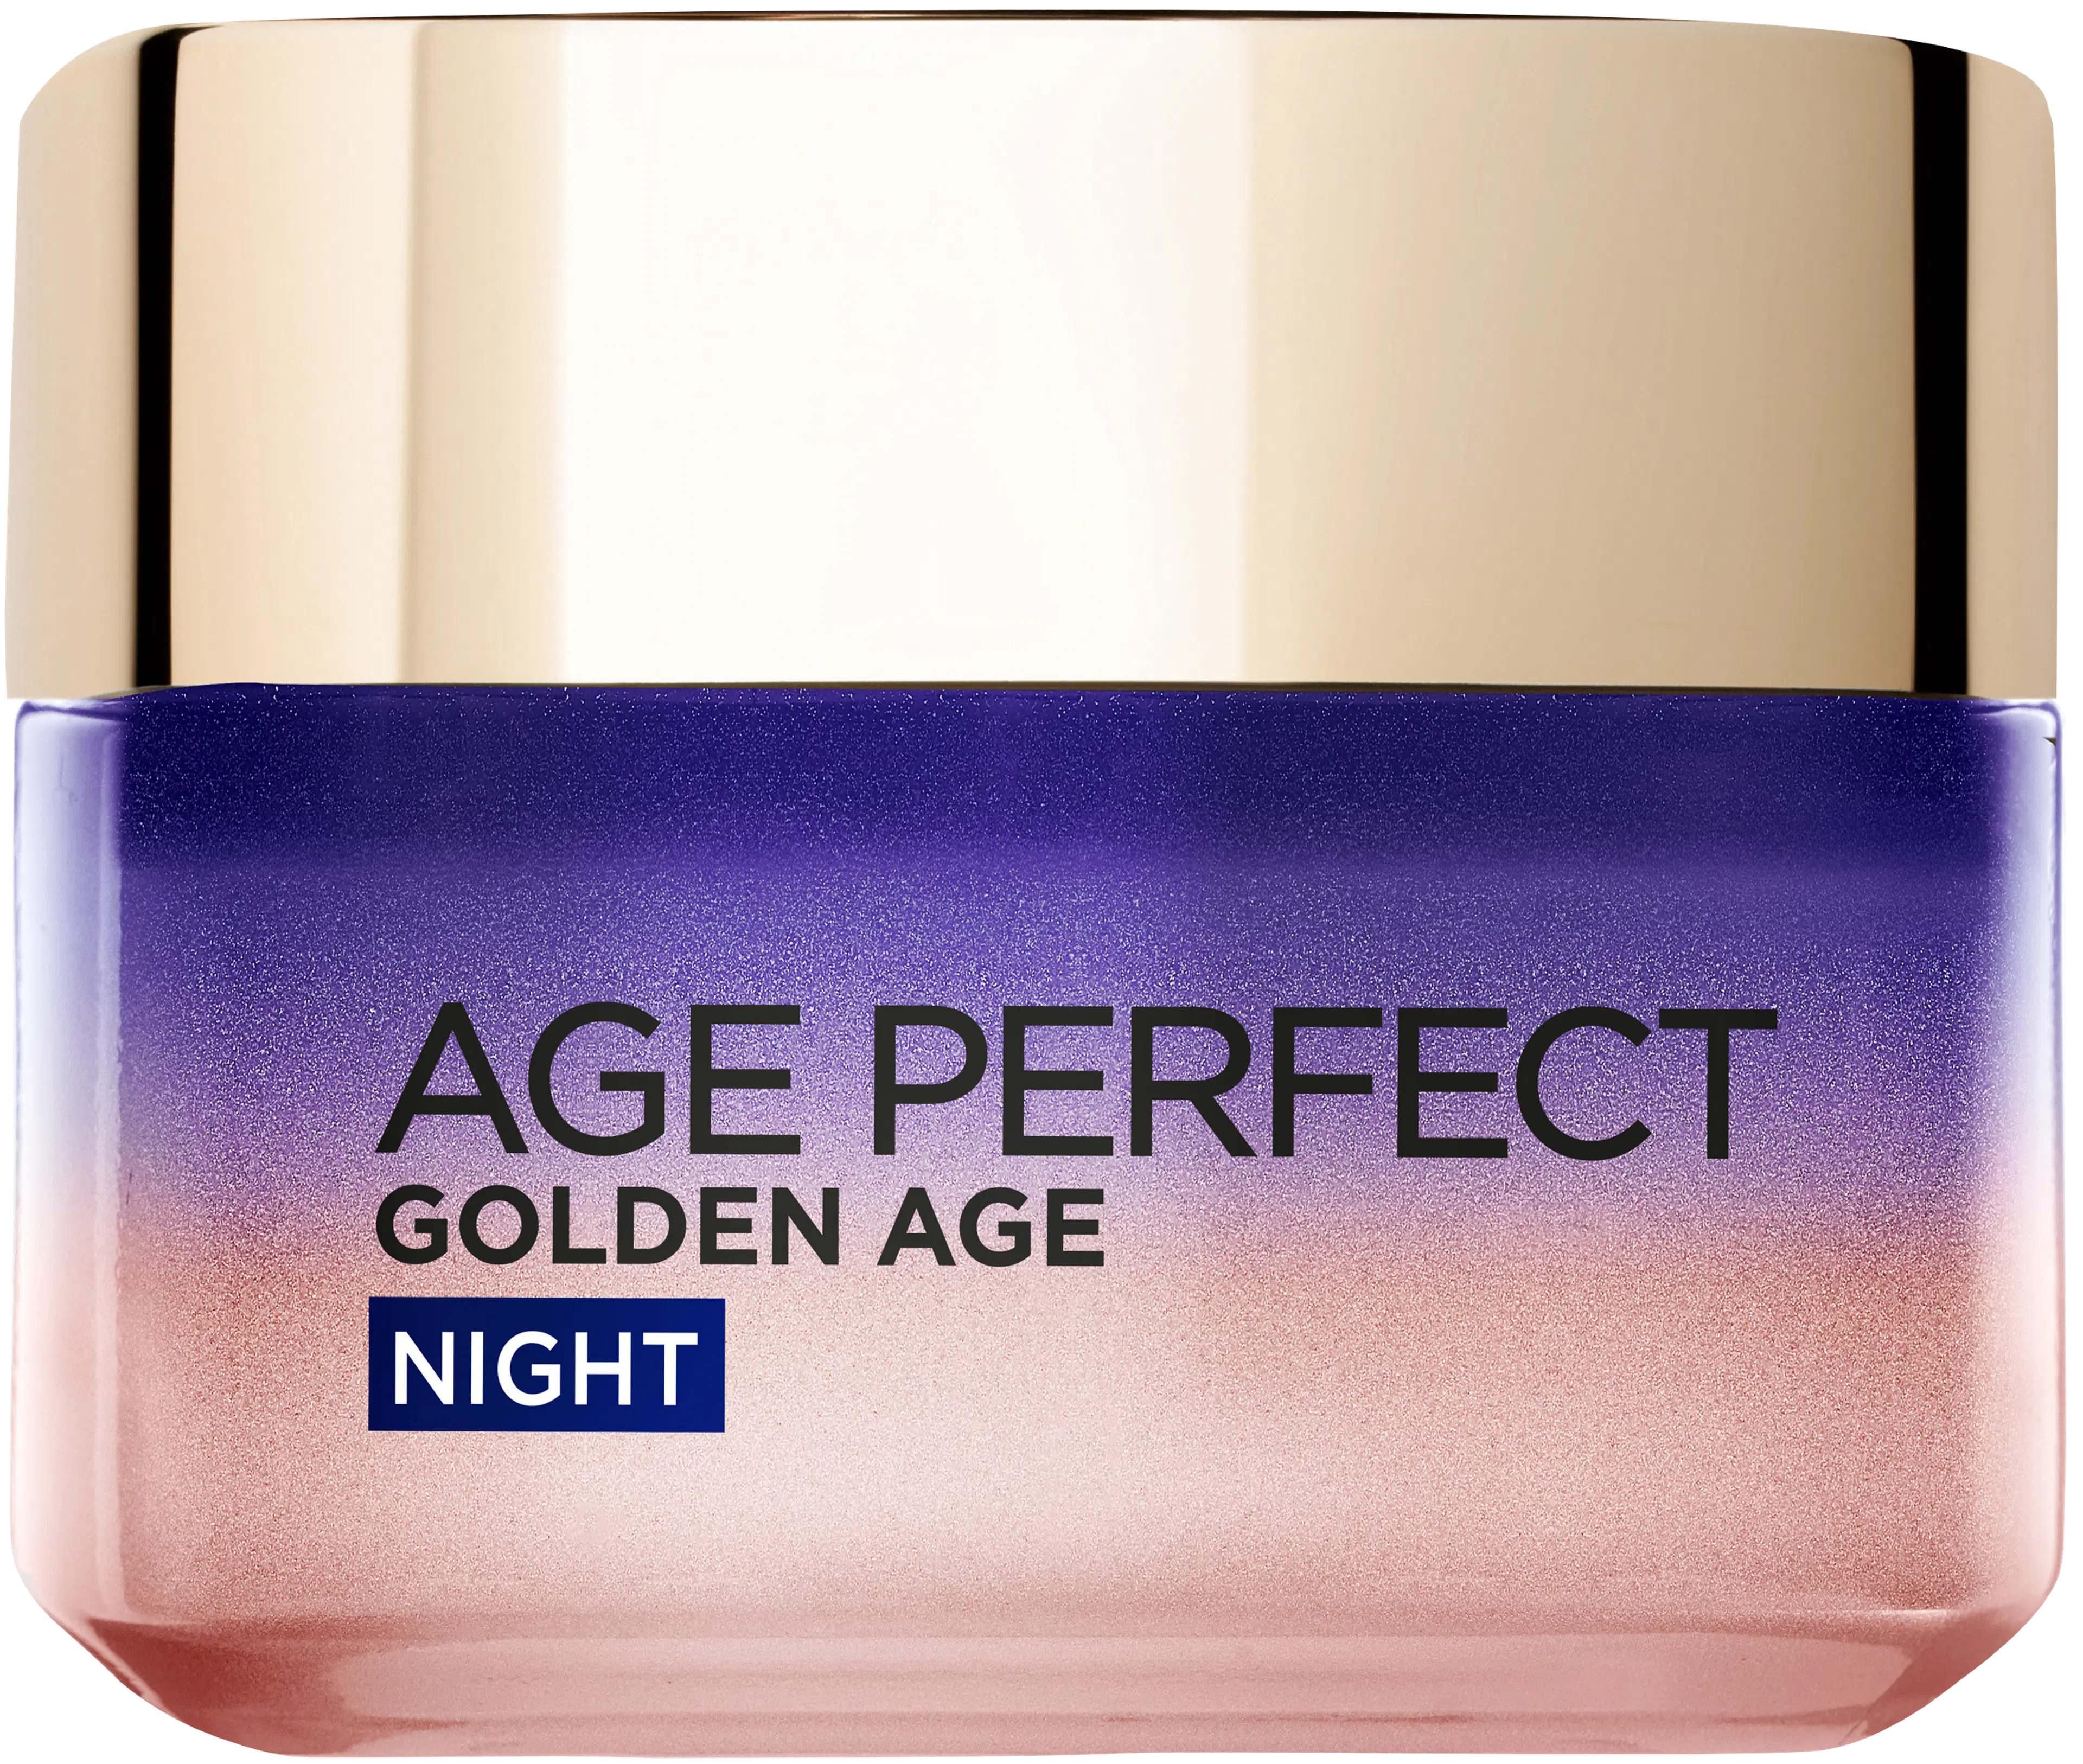 L'Oréal Paris Age Perfect Golden Age Night vahvistava ja kaunistava yövoide 50ml